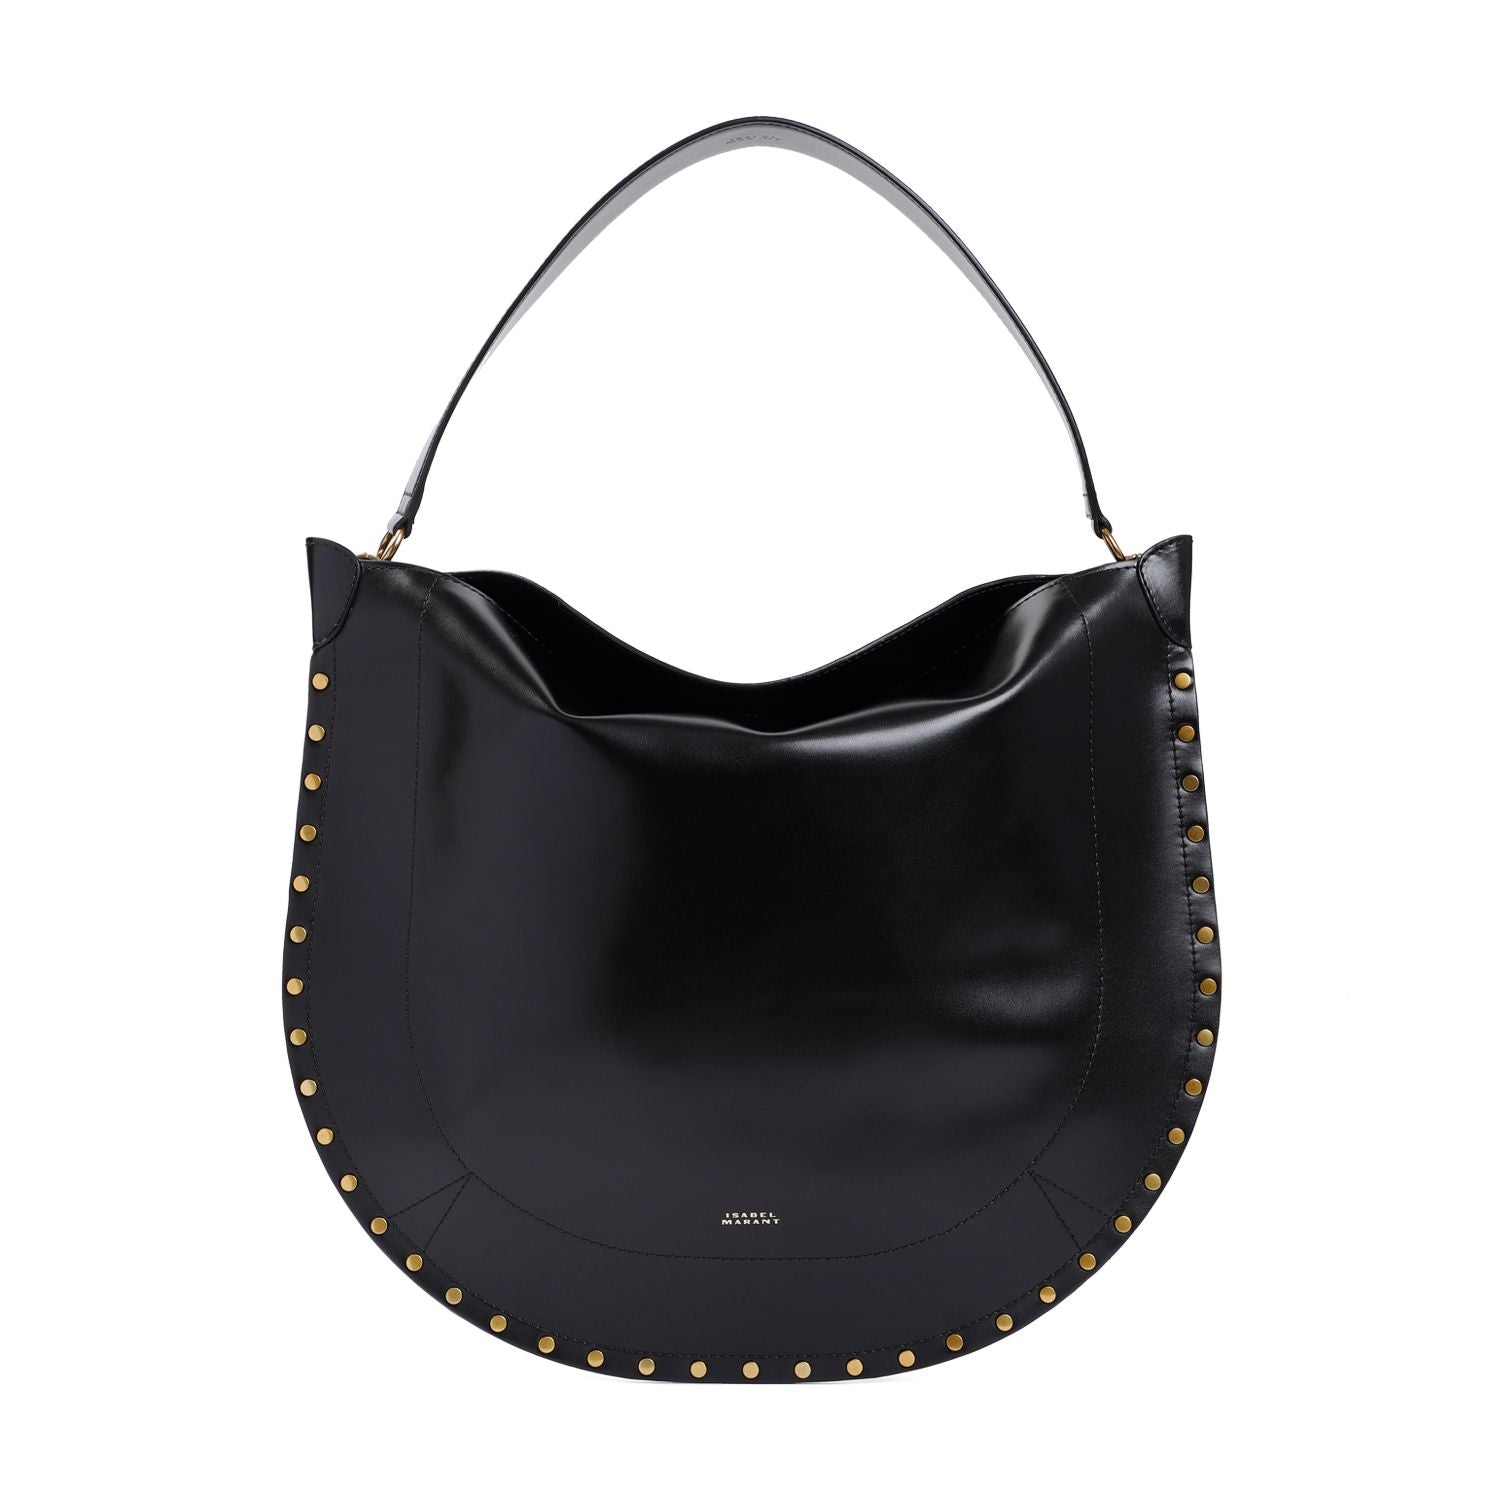 Isabel Marant Stylish Black Leather Hobo Handbag For Women